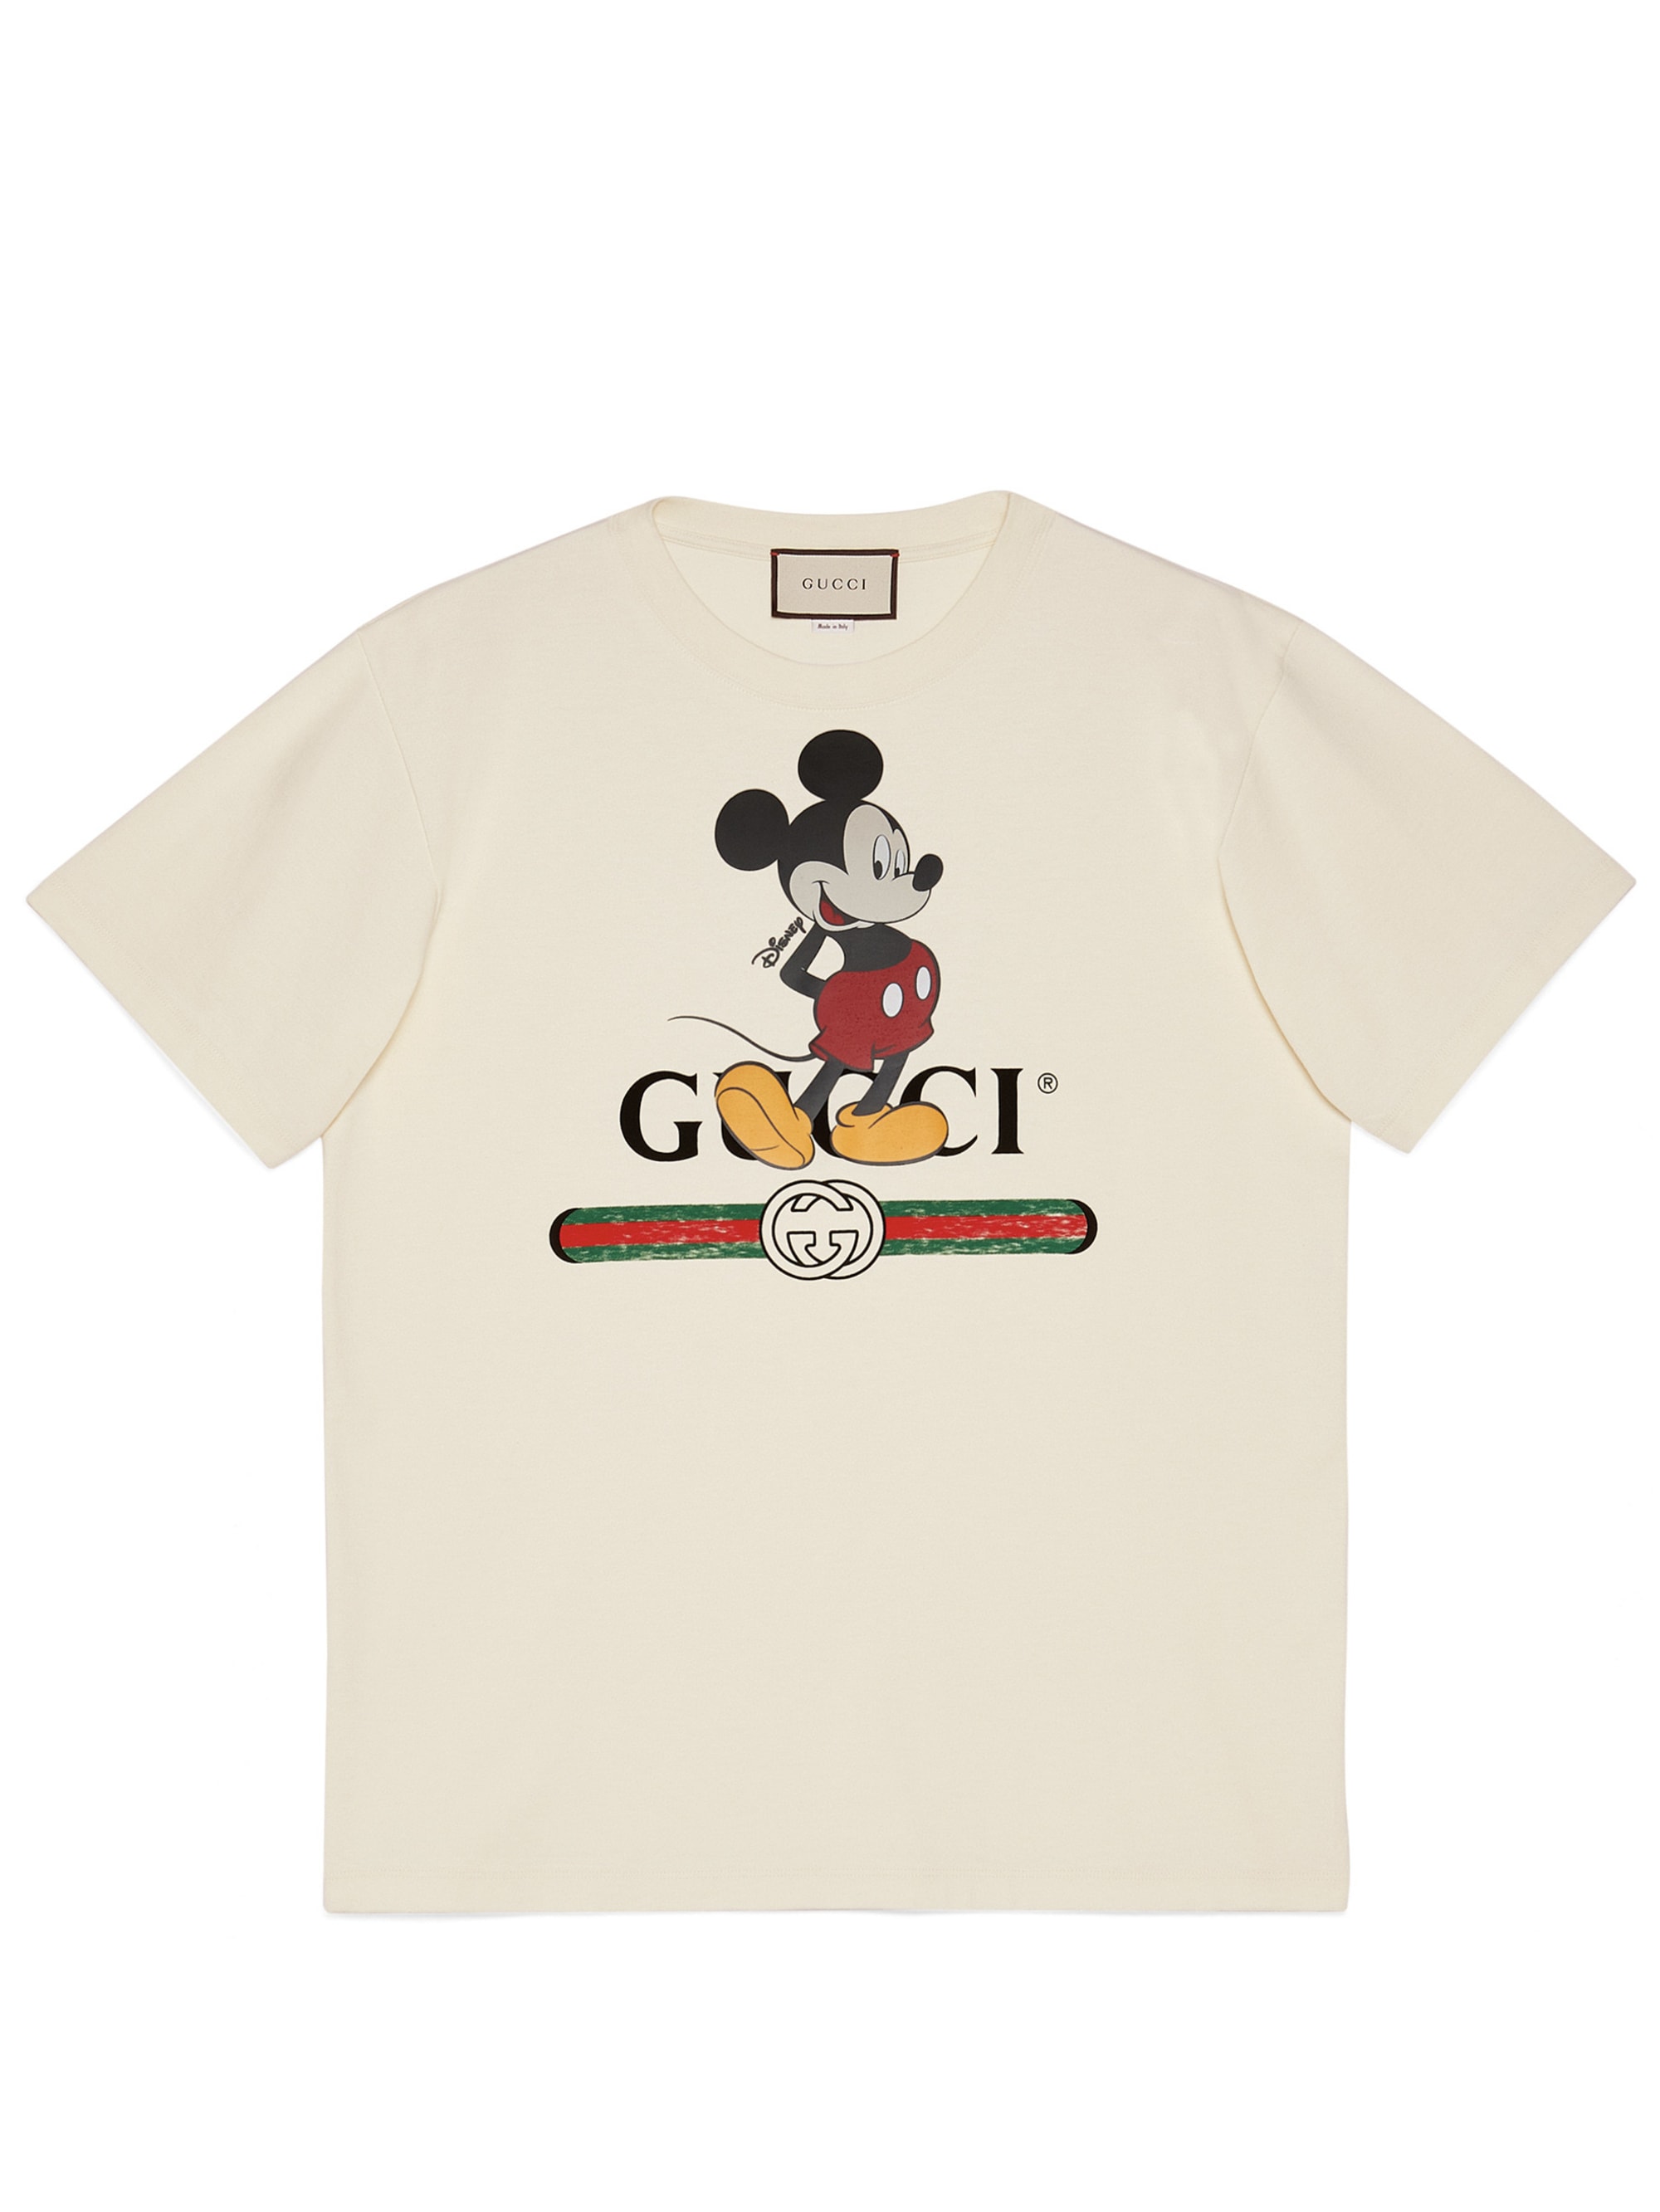 グッチ ミッキーマウスの限定コレクション発売 Tシャツからiphone